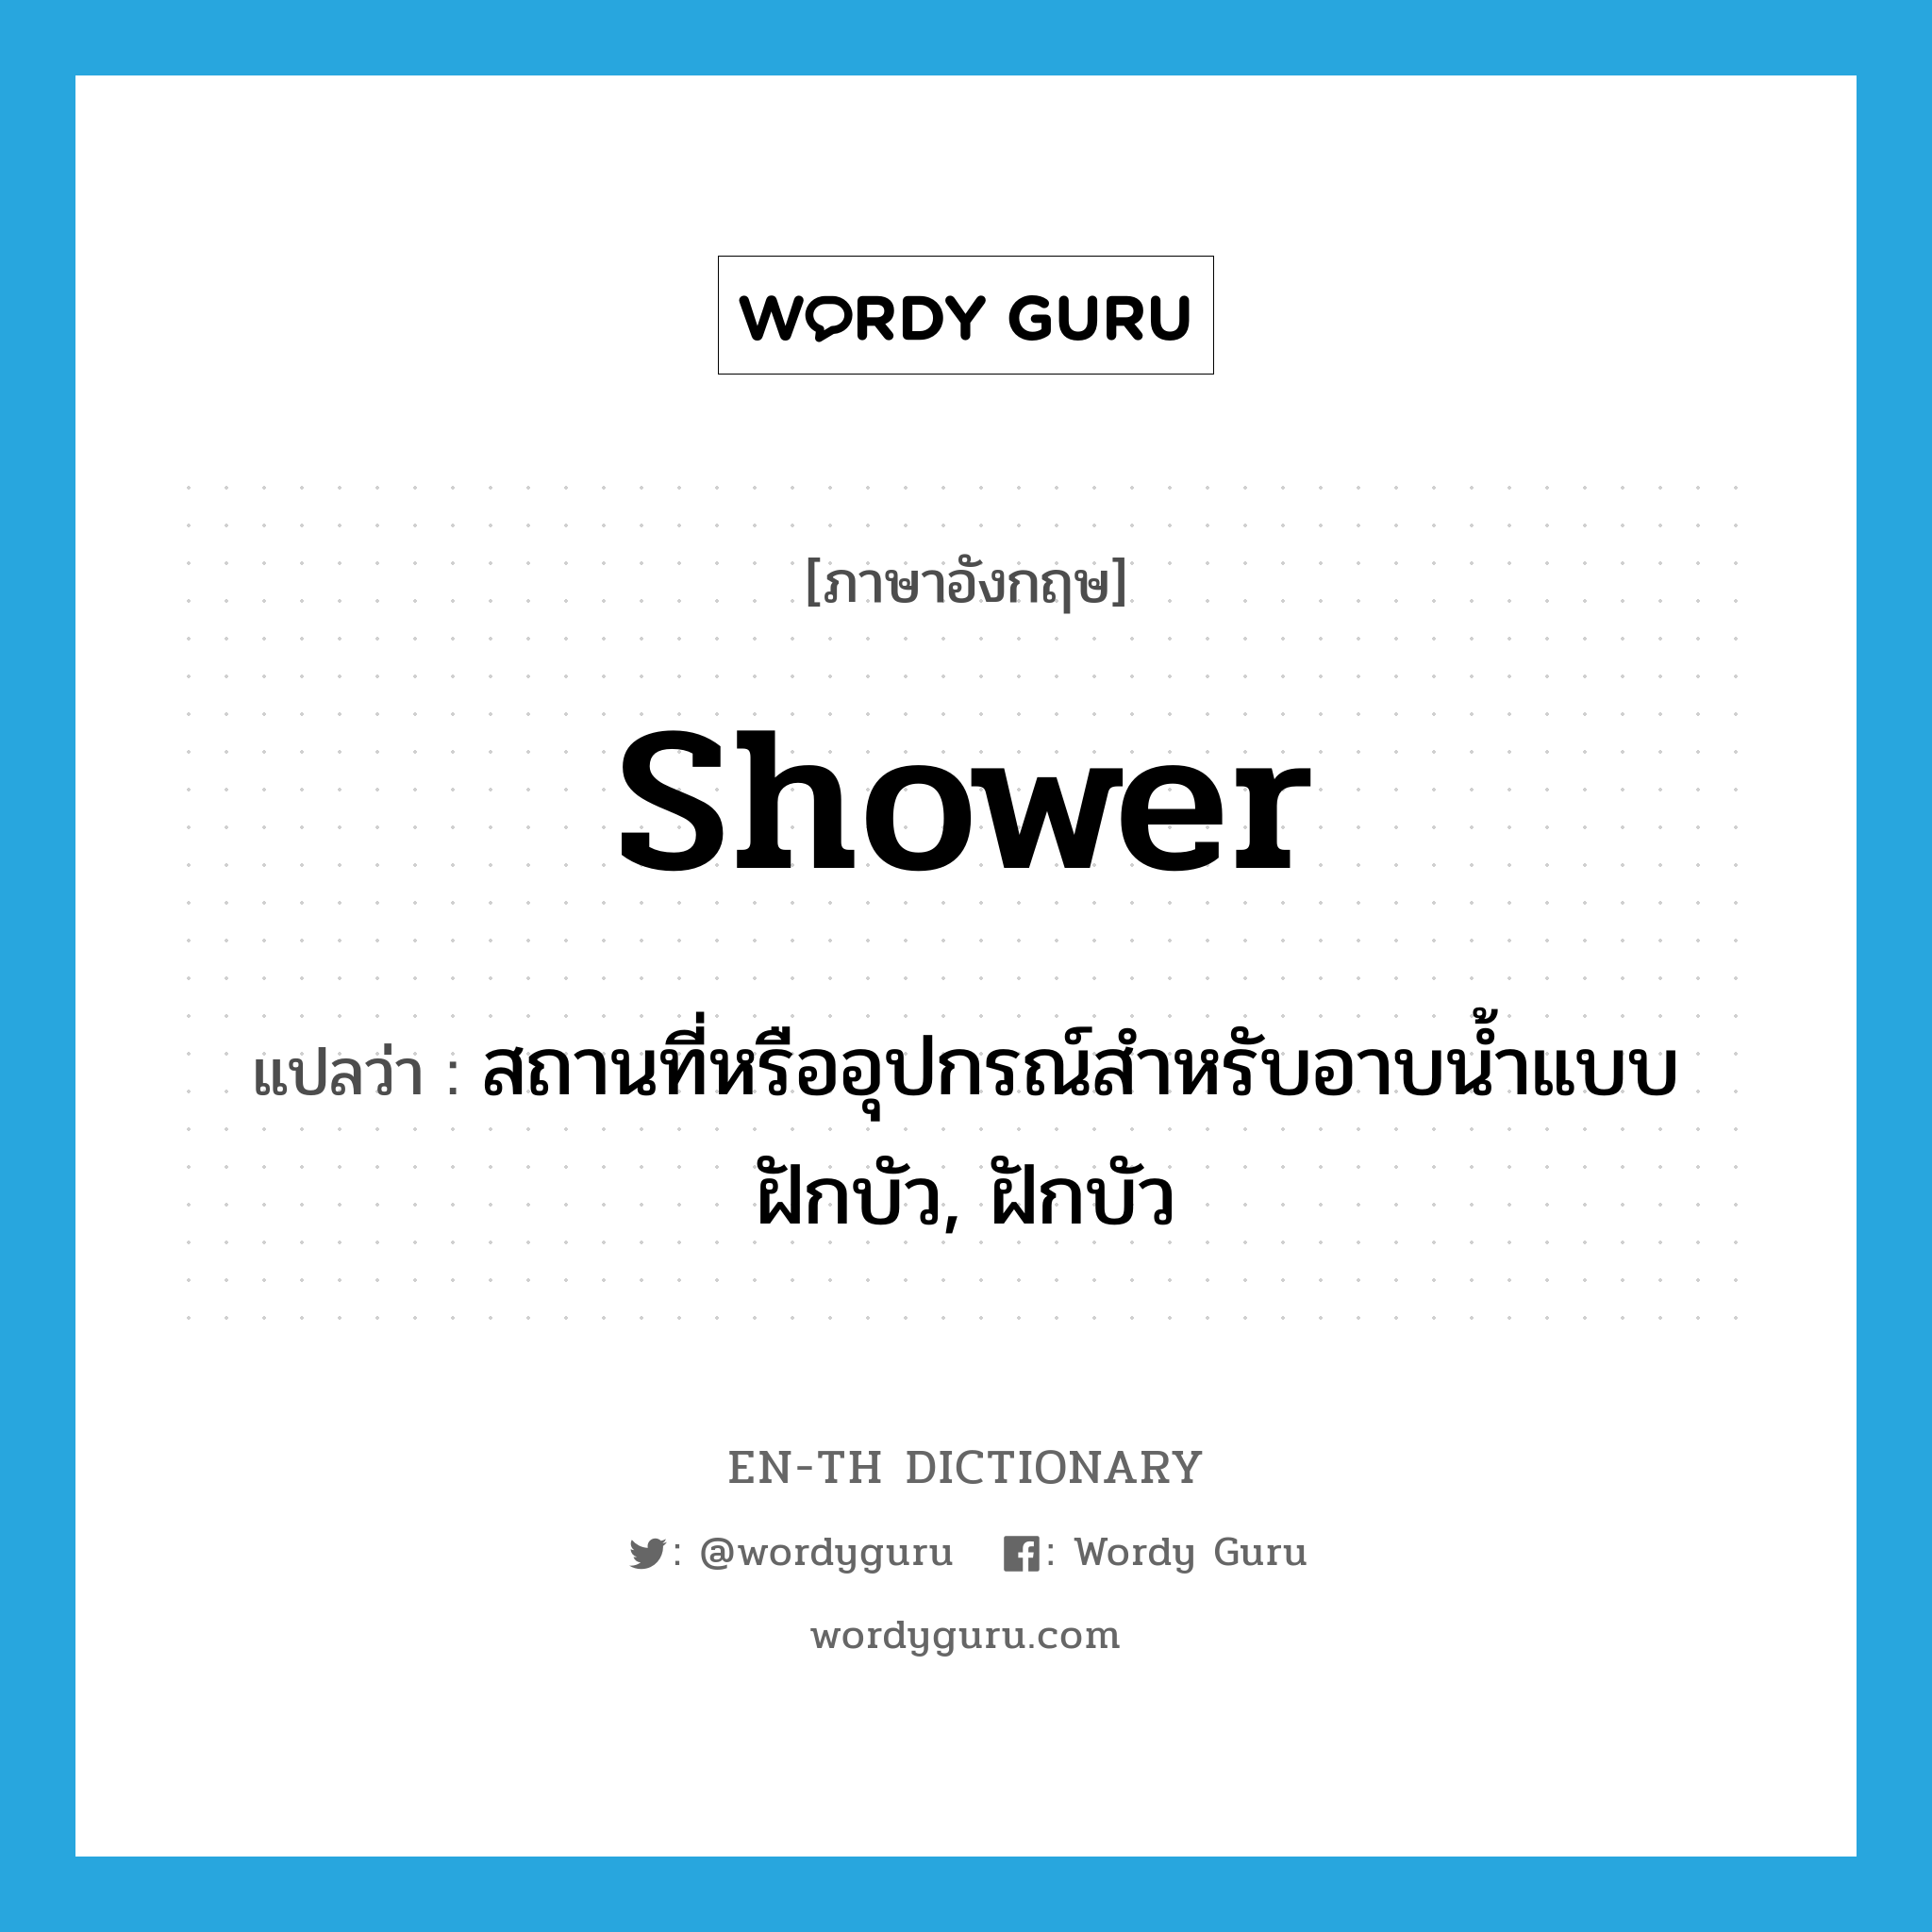 สถานที่หรืออุปกรณ์สำหรับอาบน้ำแบบฝักบัว, ฝักบัว ภาษาอังกฤษ?, คำศัพท์ภาษาอังกฤษ สถานที่หรืออุปกรณ์สำหรับอาบน้ำแบบฝักบัว, ฝักบัว แปลว่า shower ประเภท N หมวด N